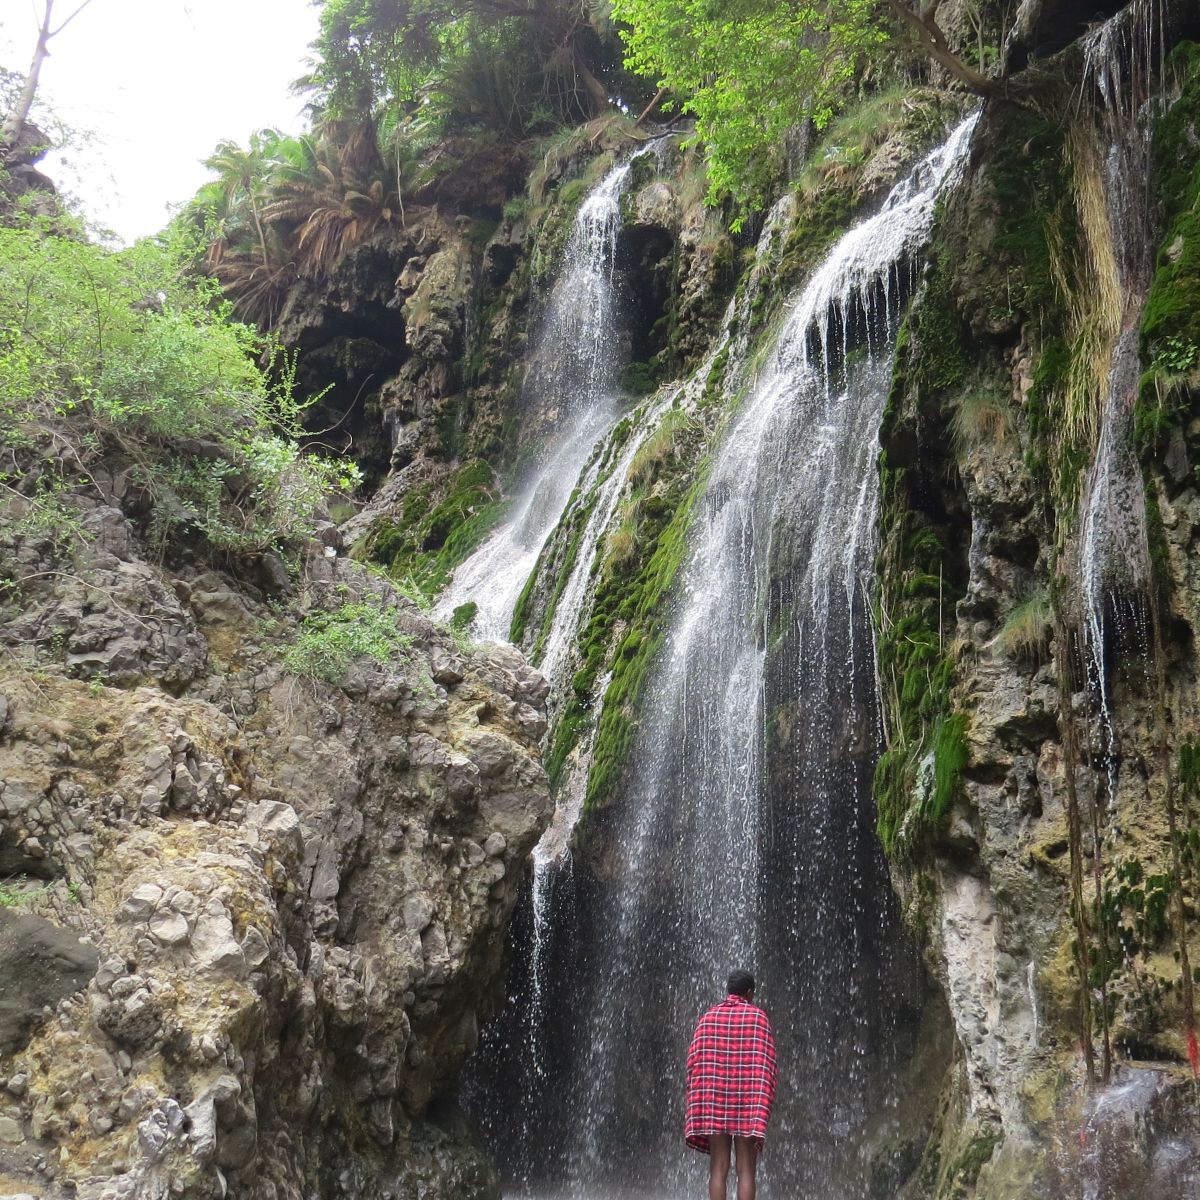 Megan. Samuel at Ngare Sero waterfall